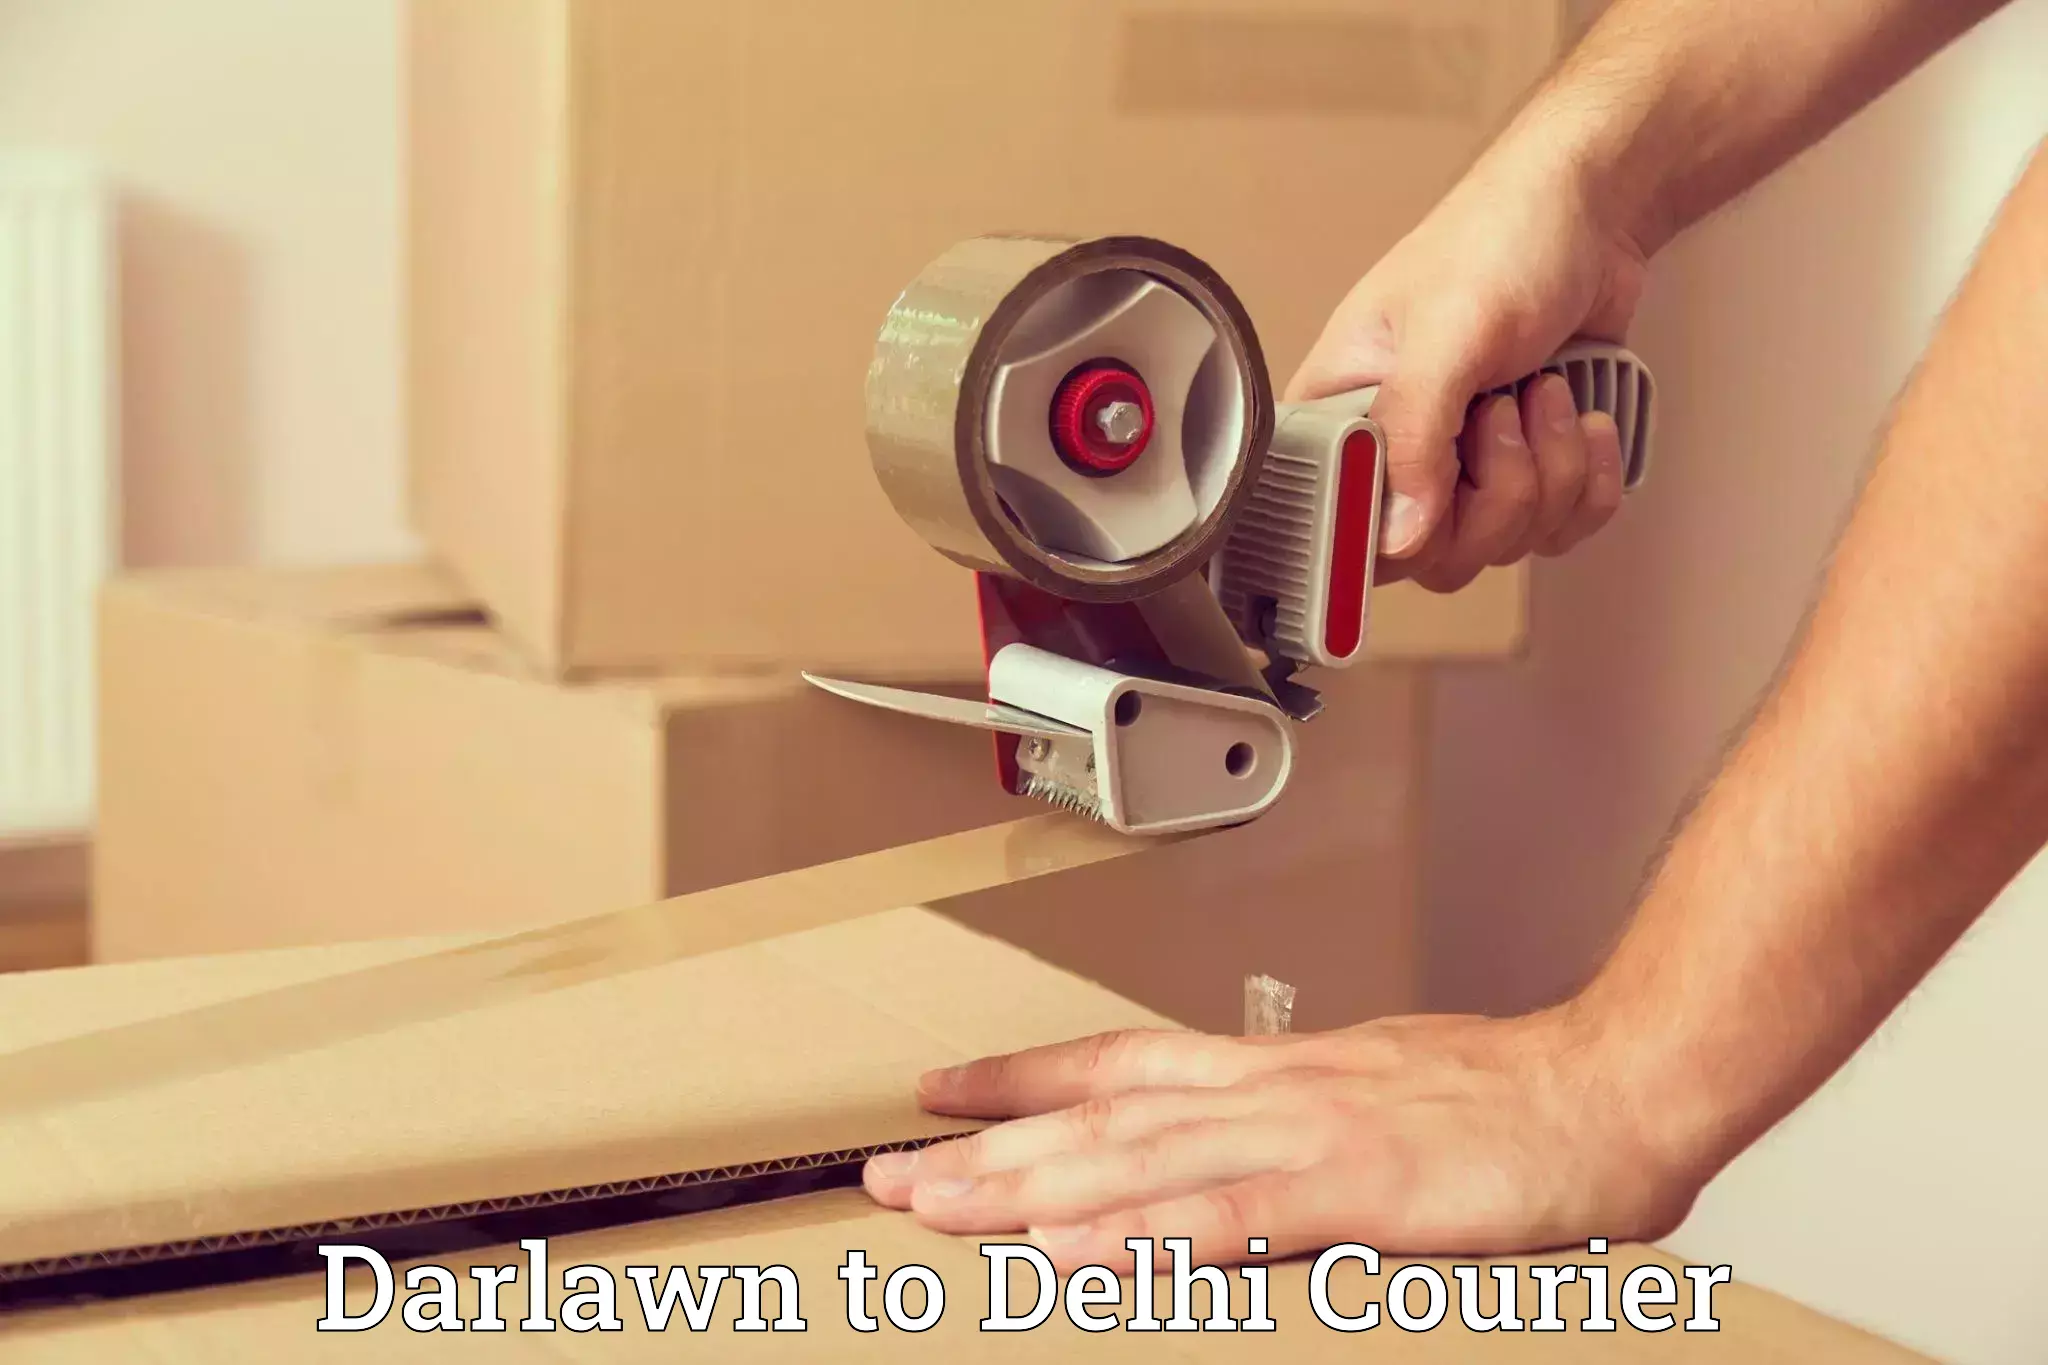 Furniture transport company Darlawn to Delhi